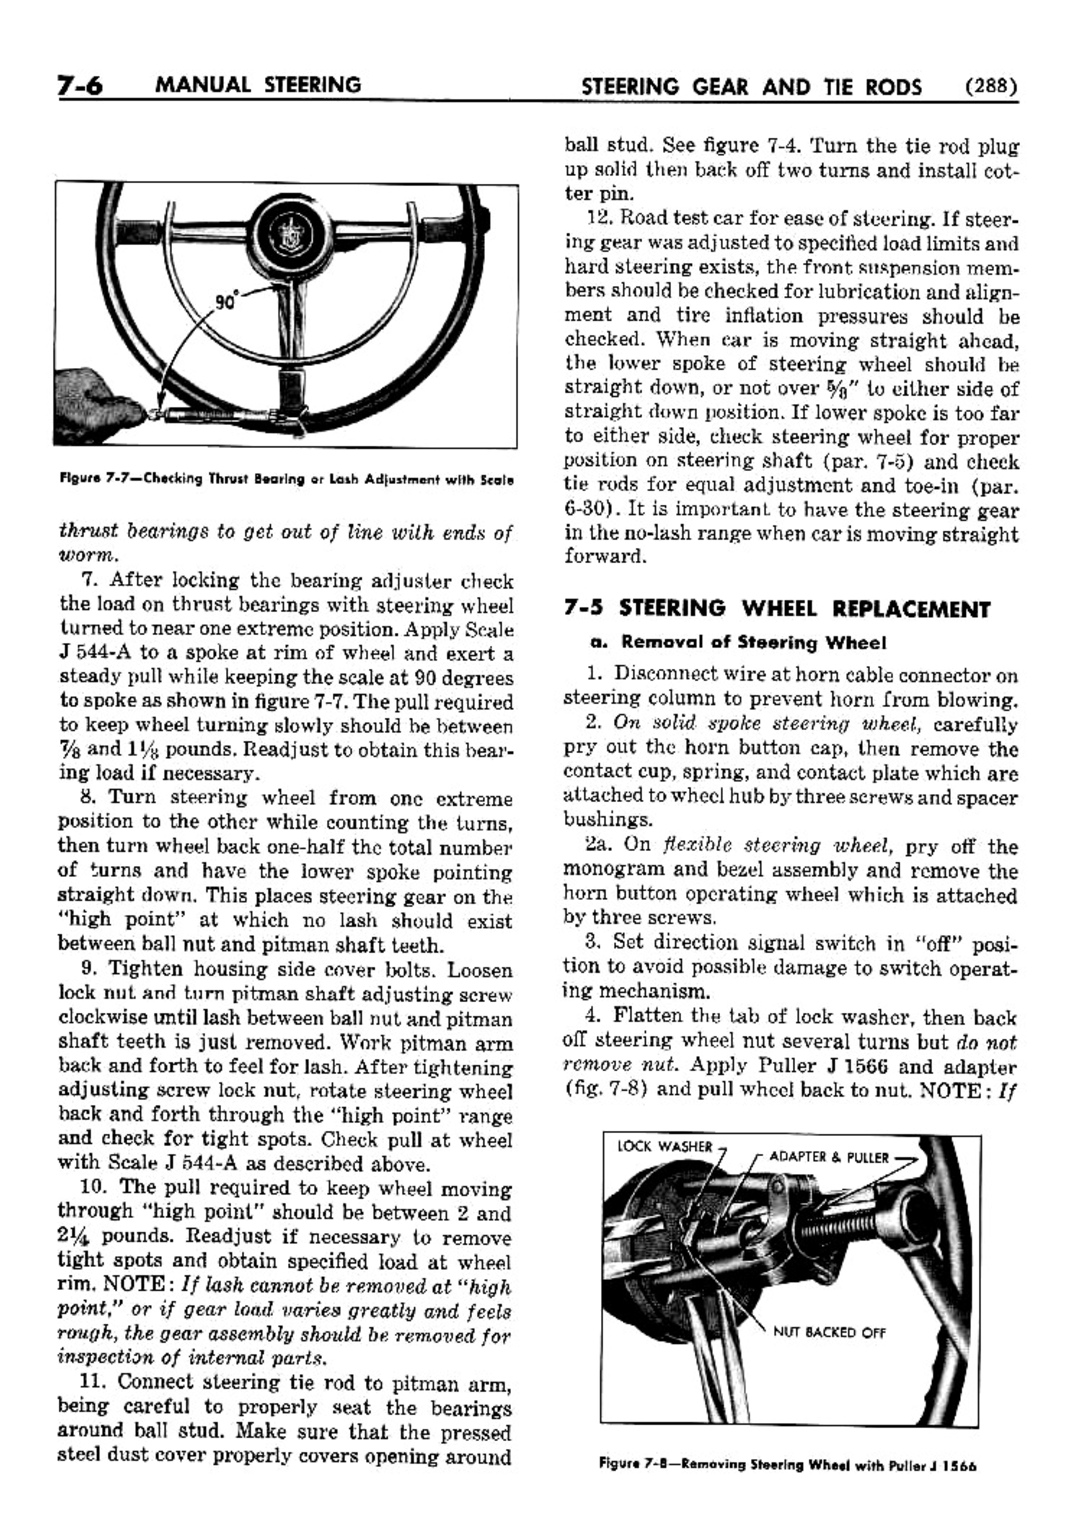 n_08 1952 Buick Shop Manual - Steering-006-006.jpg